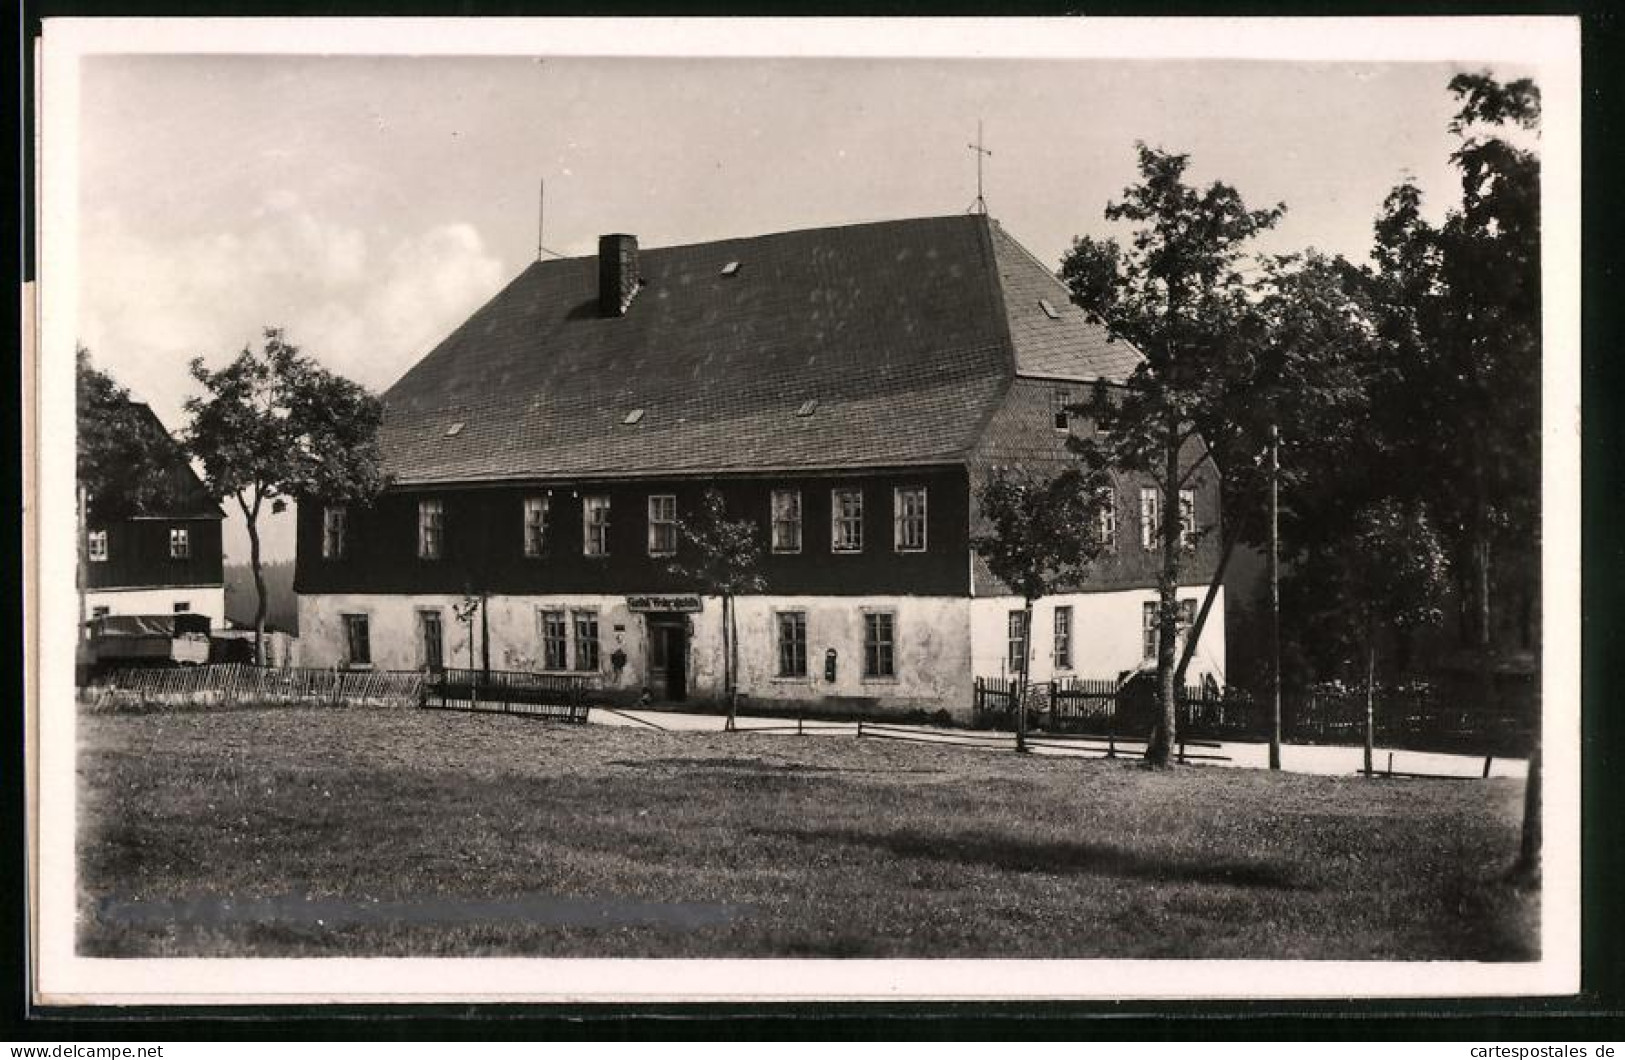 Fotografie Brück & Sohn Meissen, Ansicht Carlsfeld I. Erzg., Blick Auf Den Gasthof Weitersglashütte  - Plaatsen